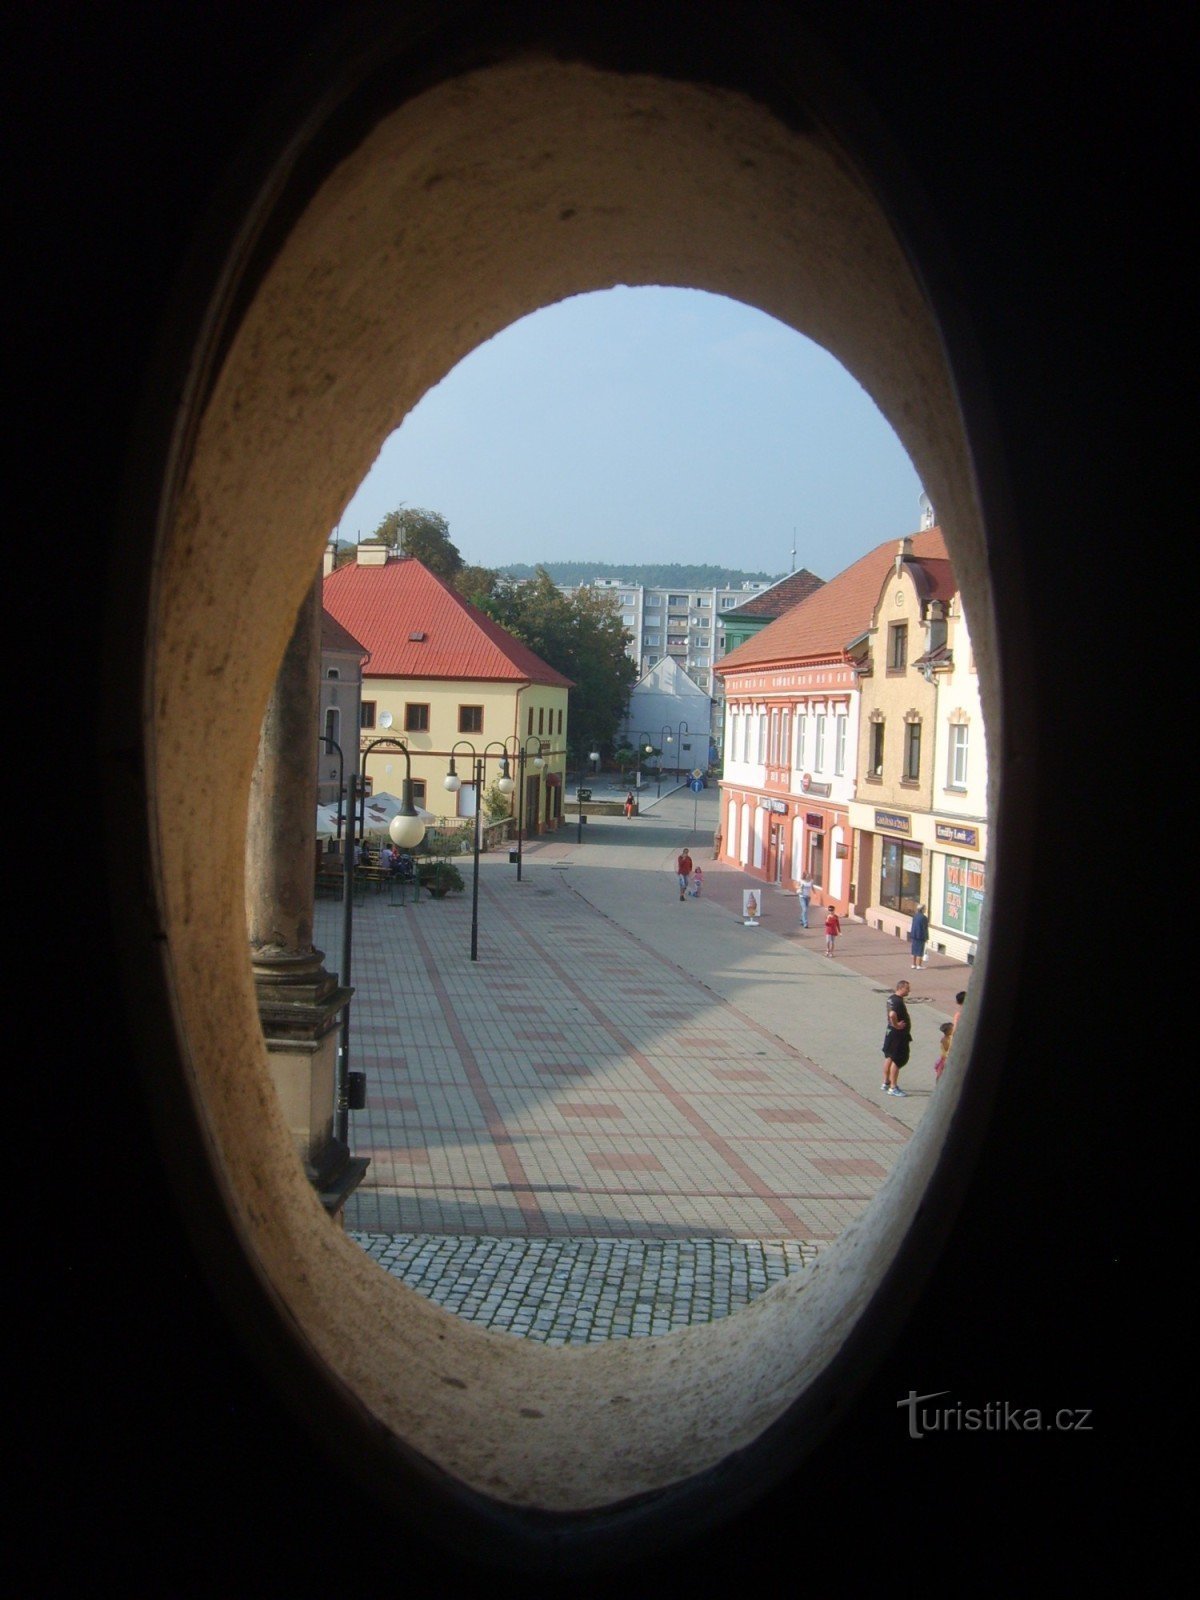 θέα από το παράθυρο του πύργου